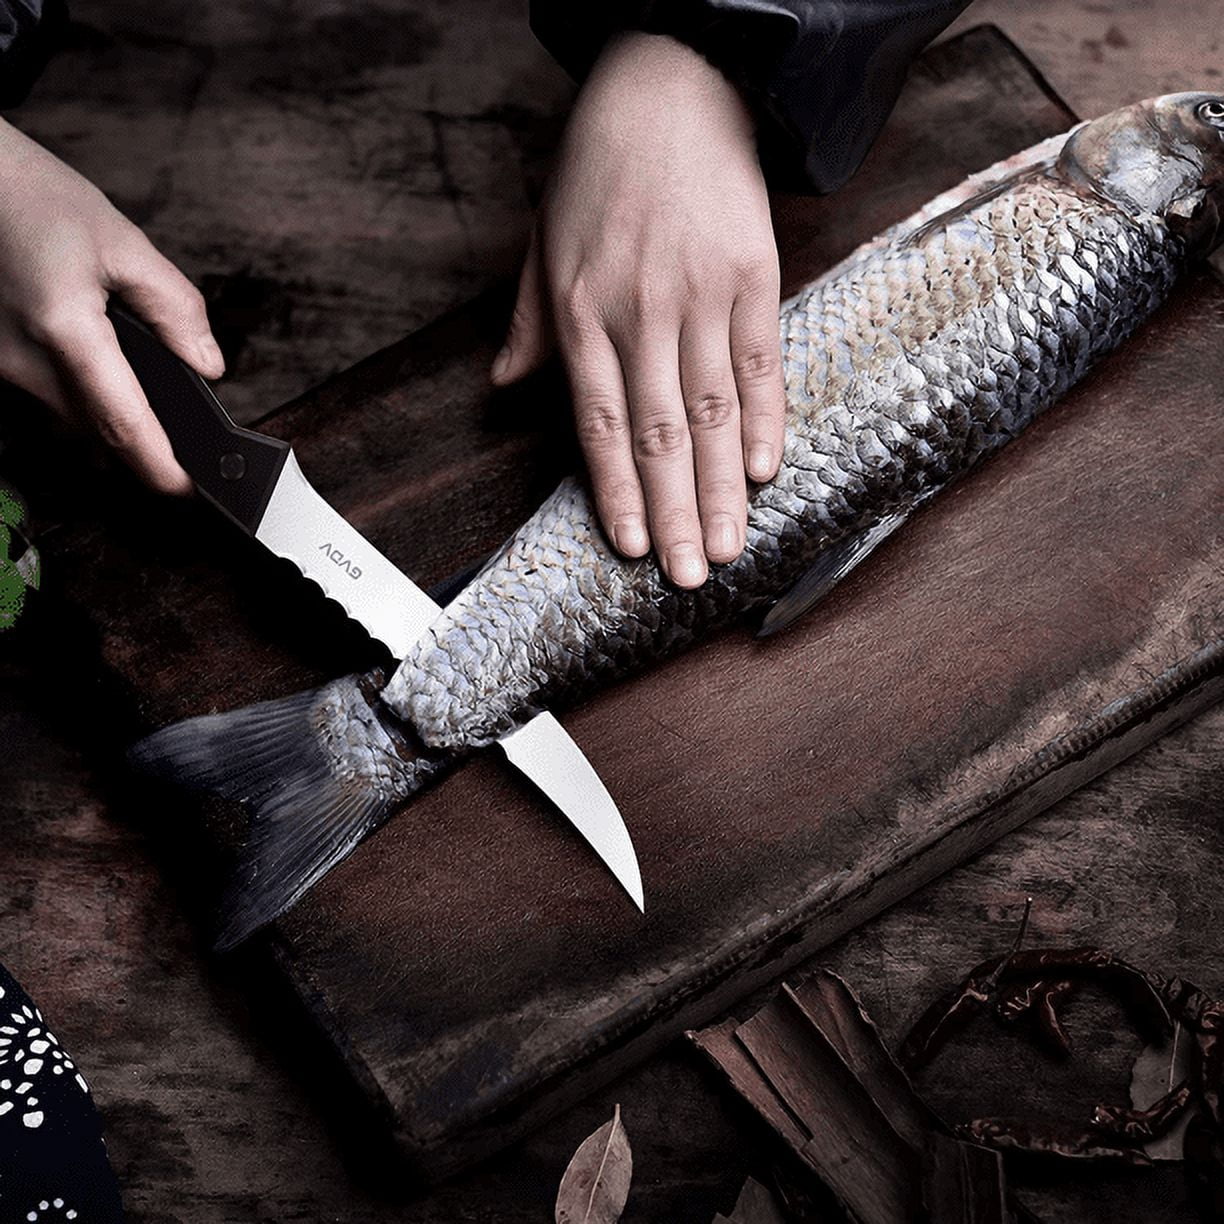 TRUSCEND Razor Sharp Stainless Steel Fishing Fillet Knife